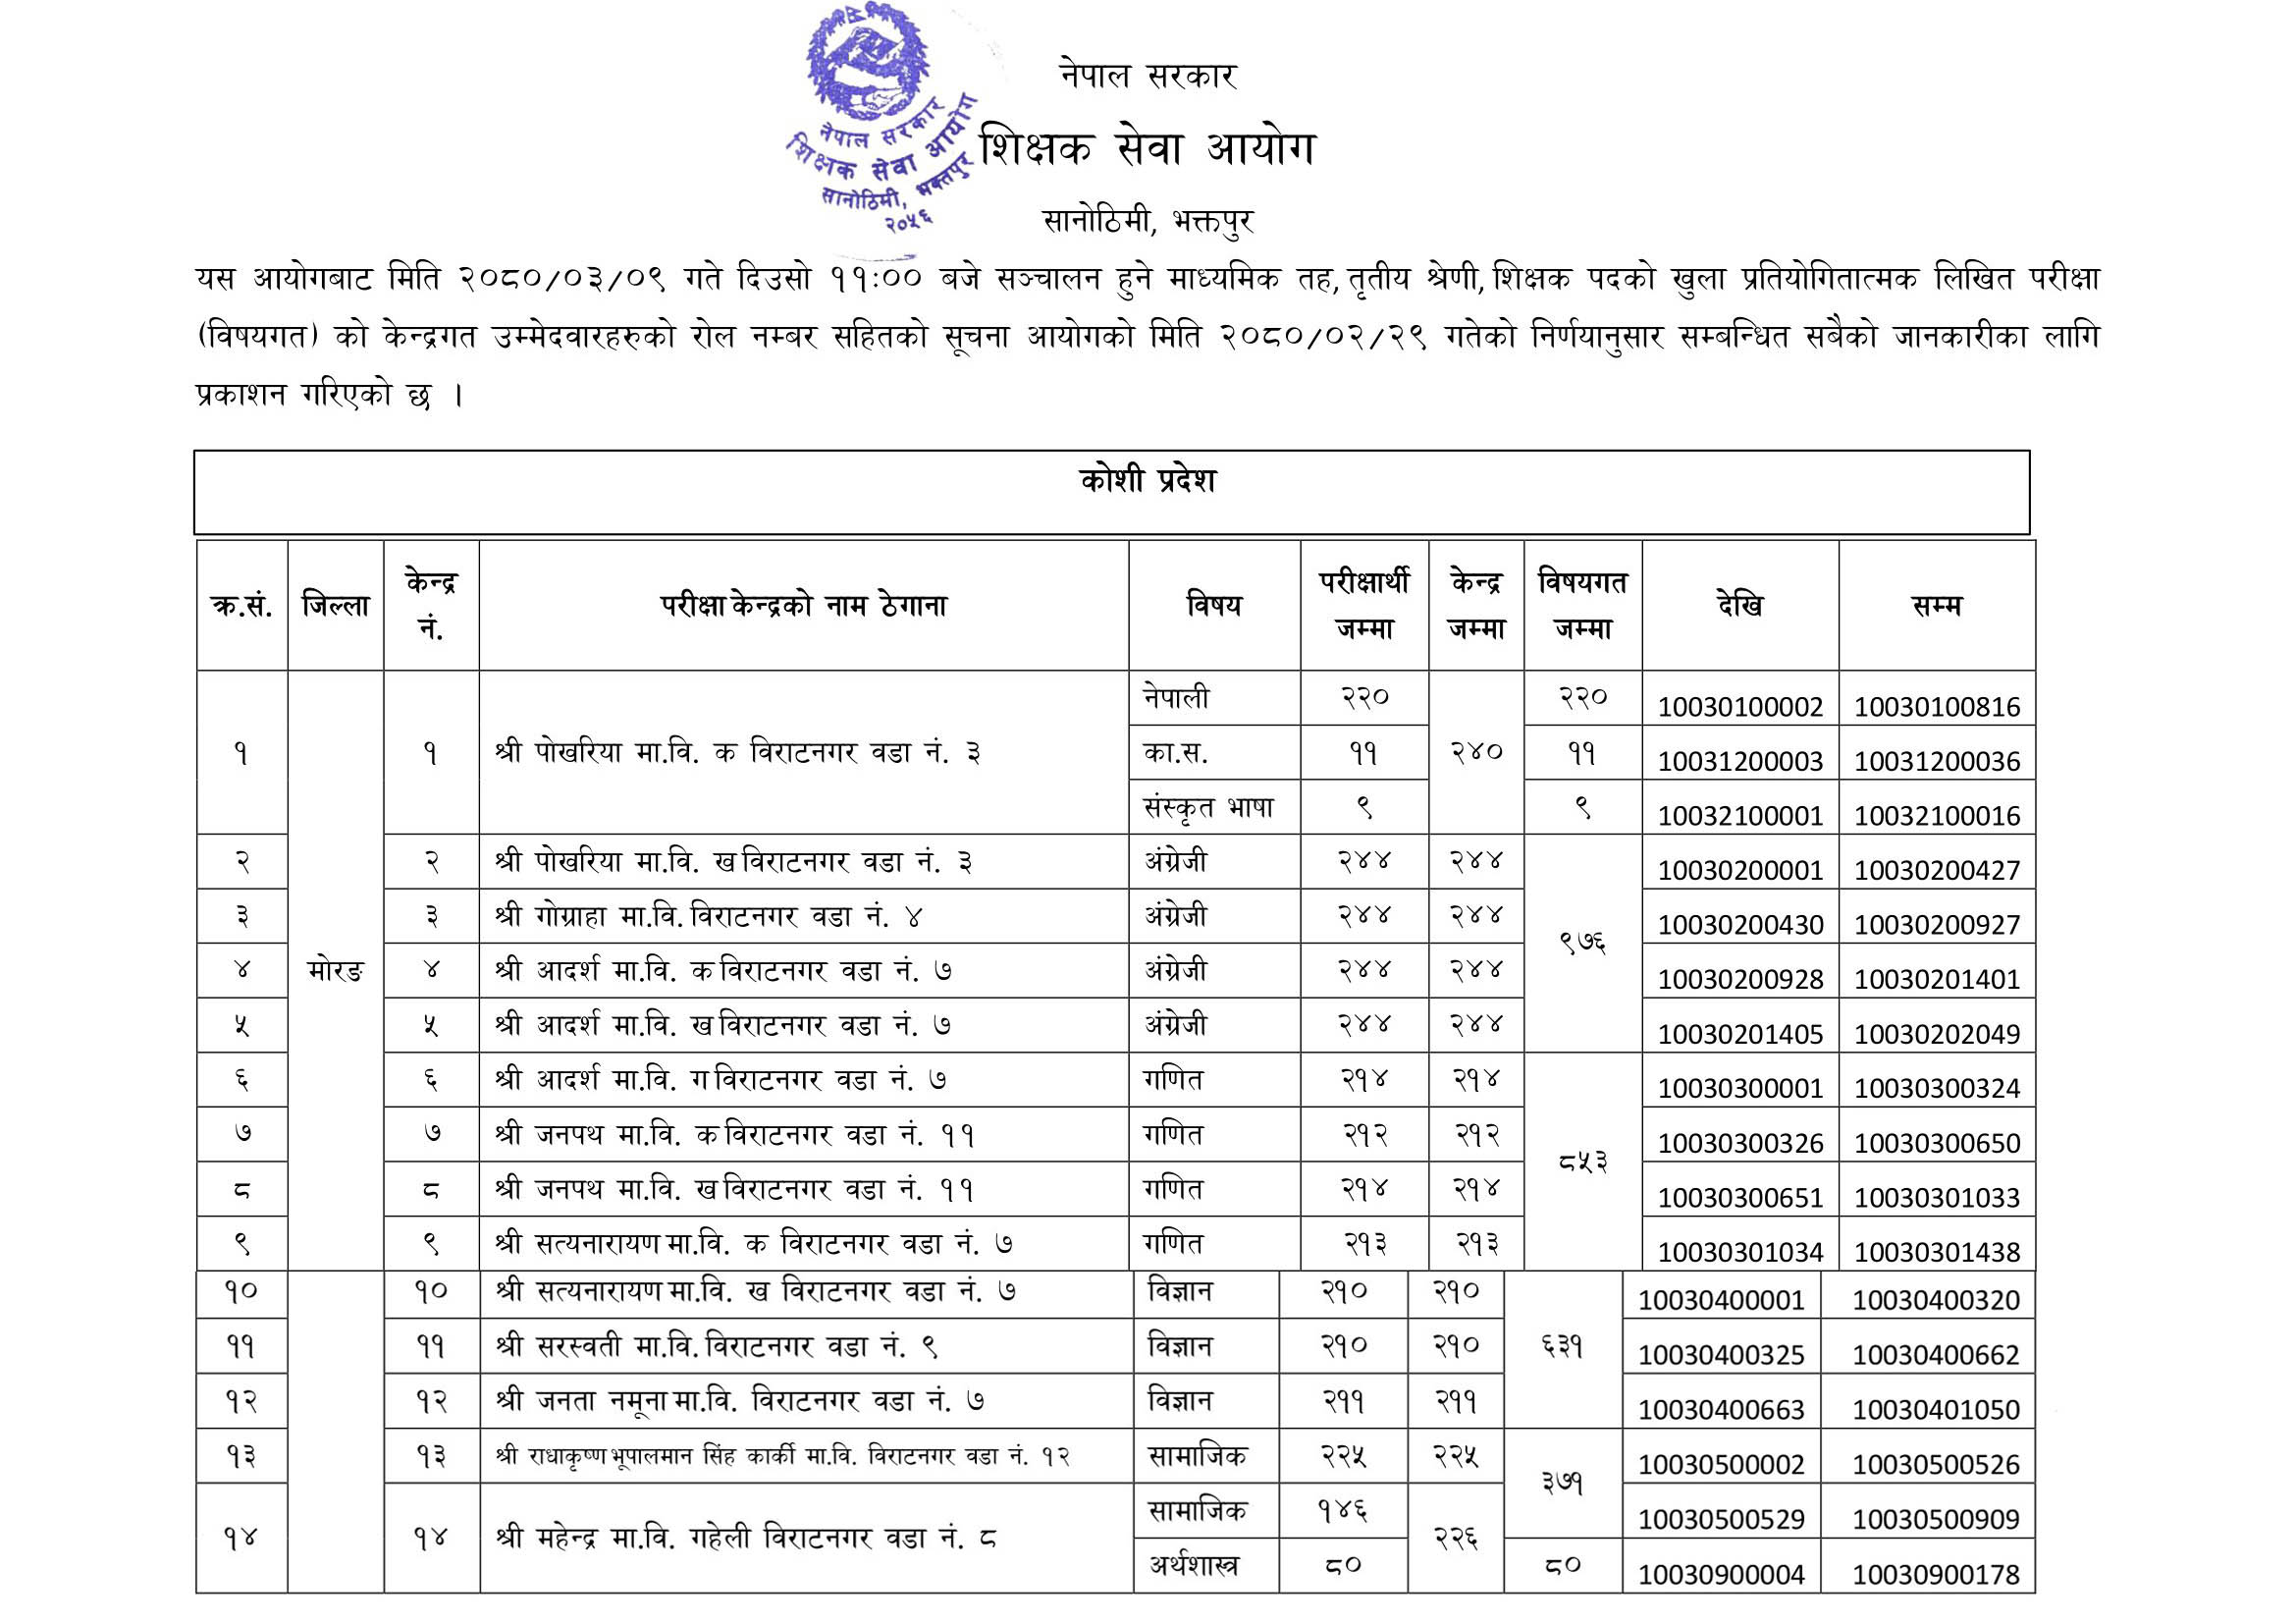 Secondary Level Koshi Pradesh Written Examination (Subjective) Exam Centre